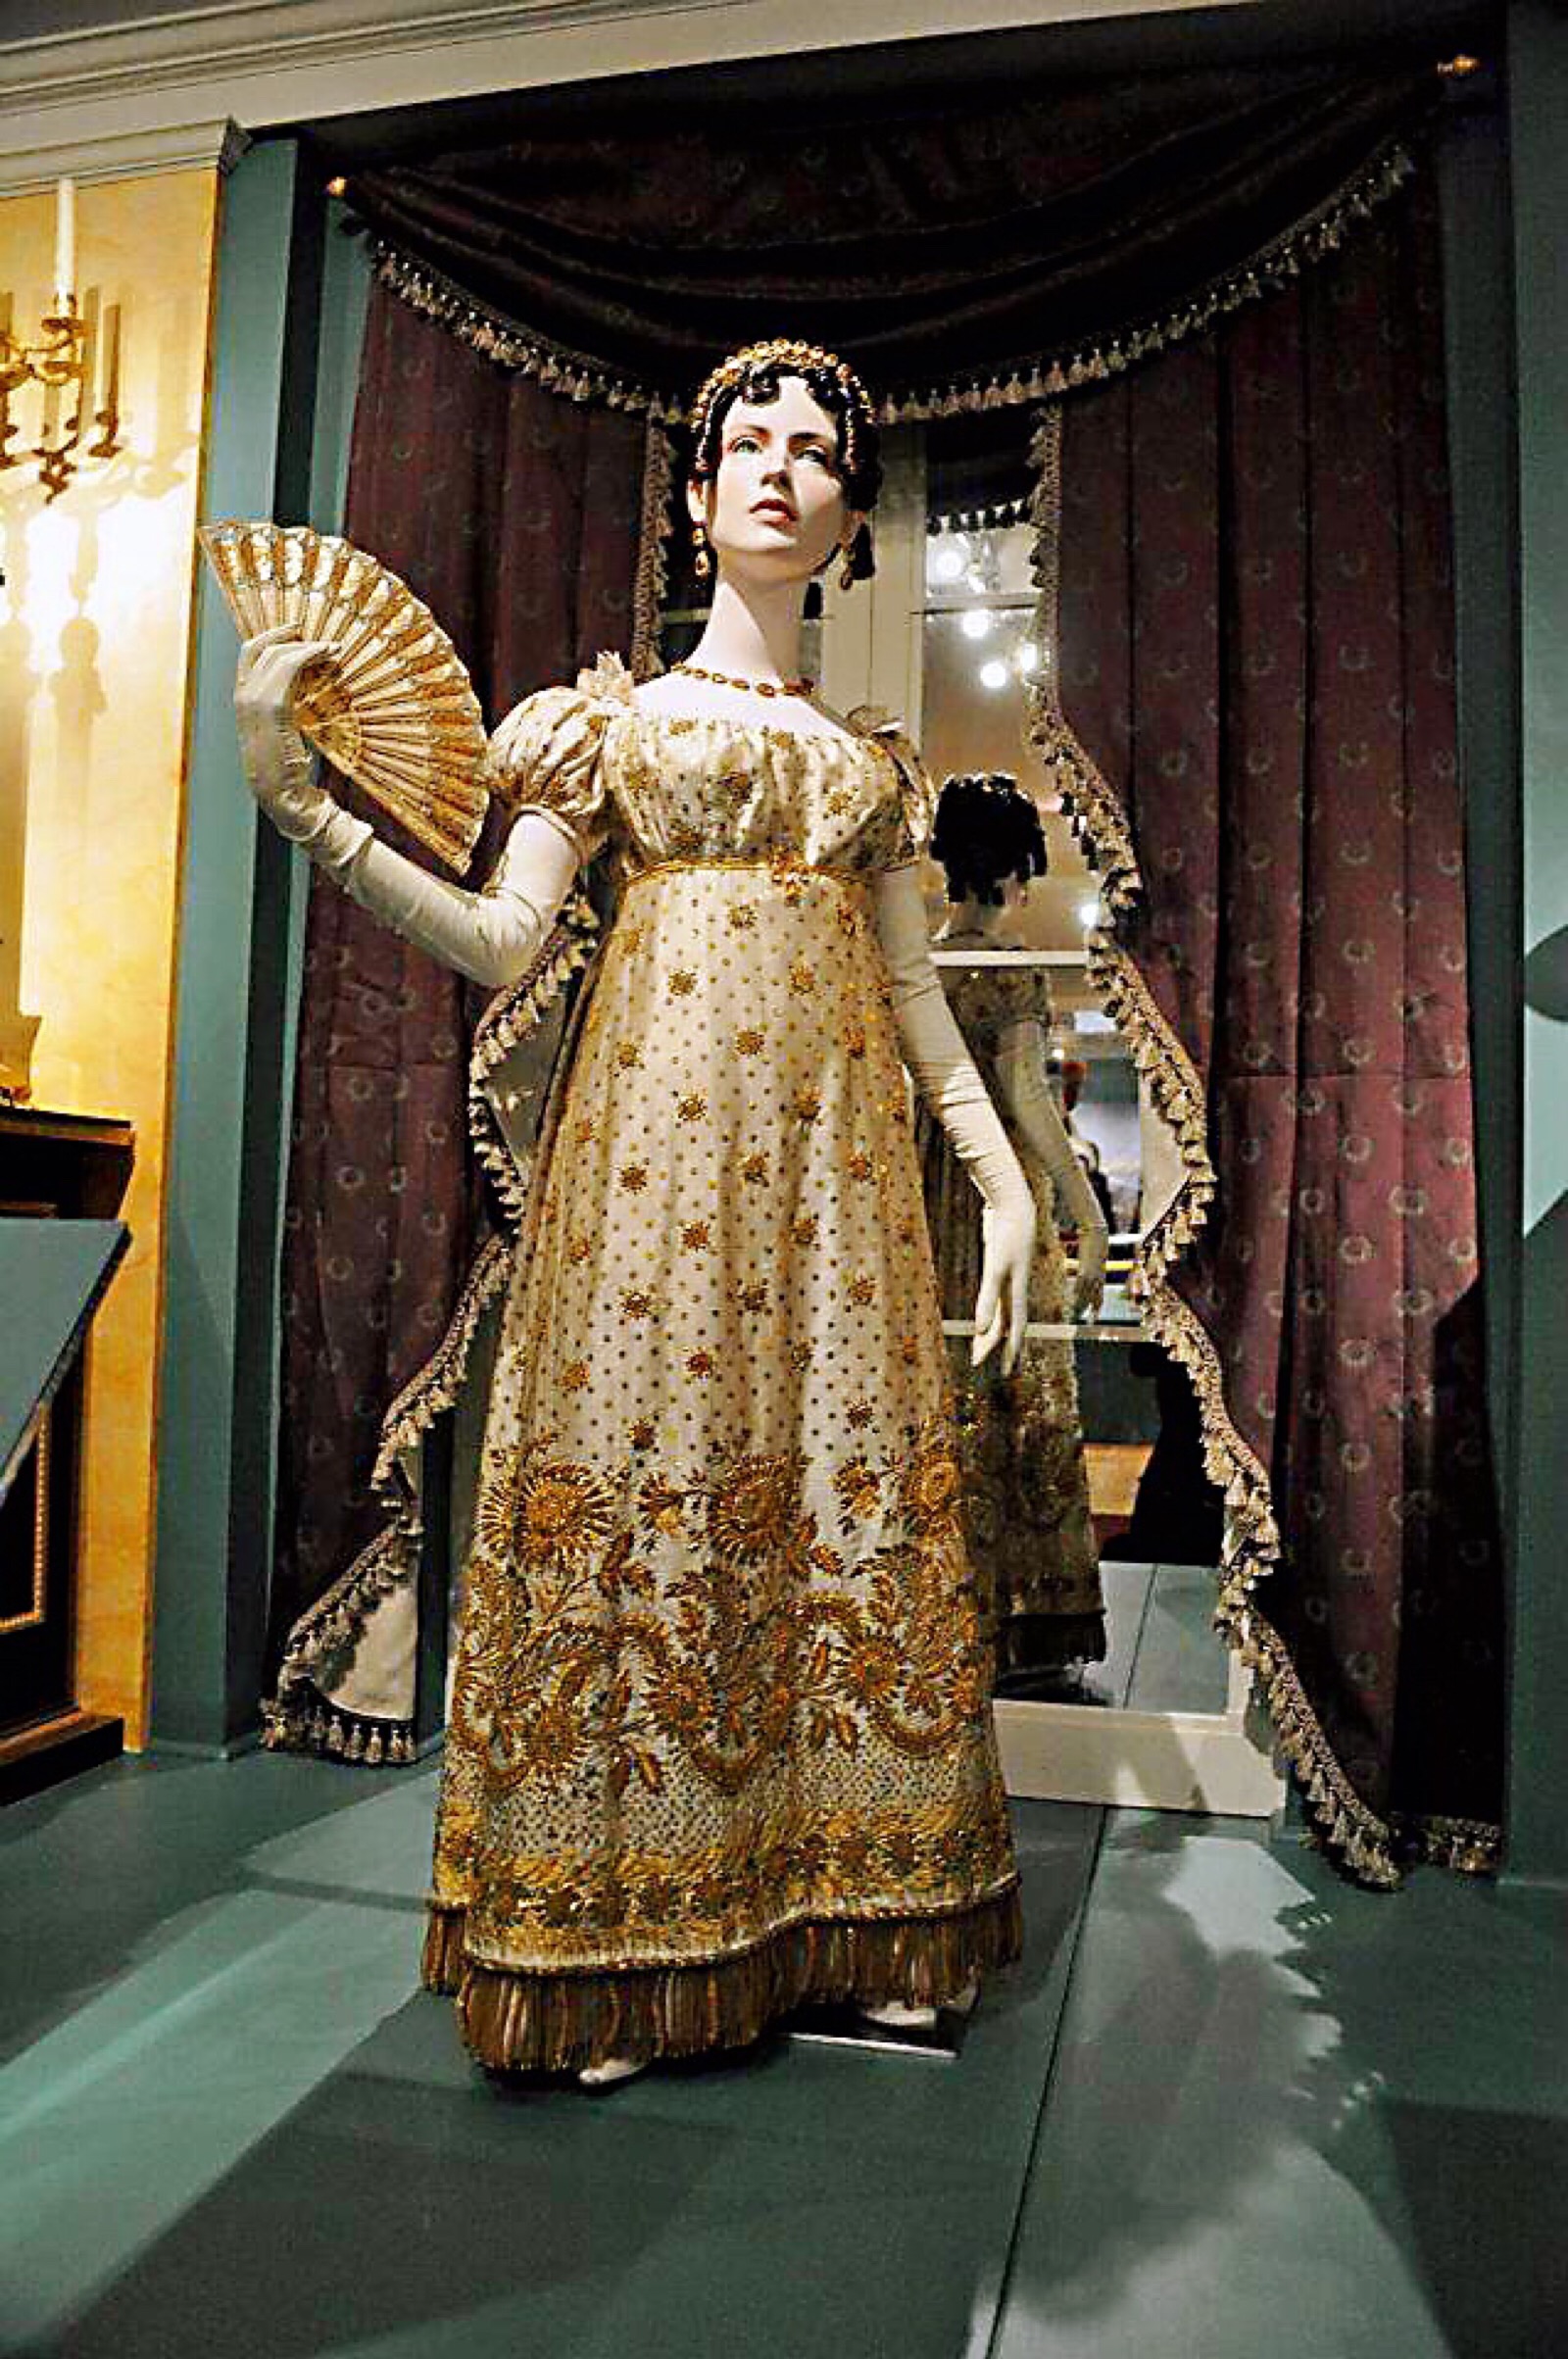 裙摆上有精致刺绣花纹的帝政裙,古典美与华丽工艺的结合.